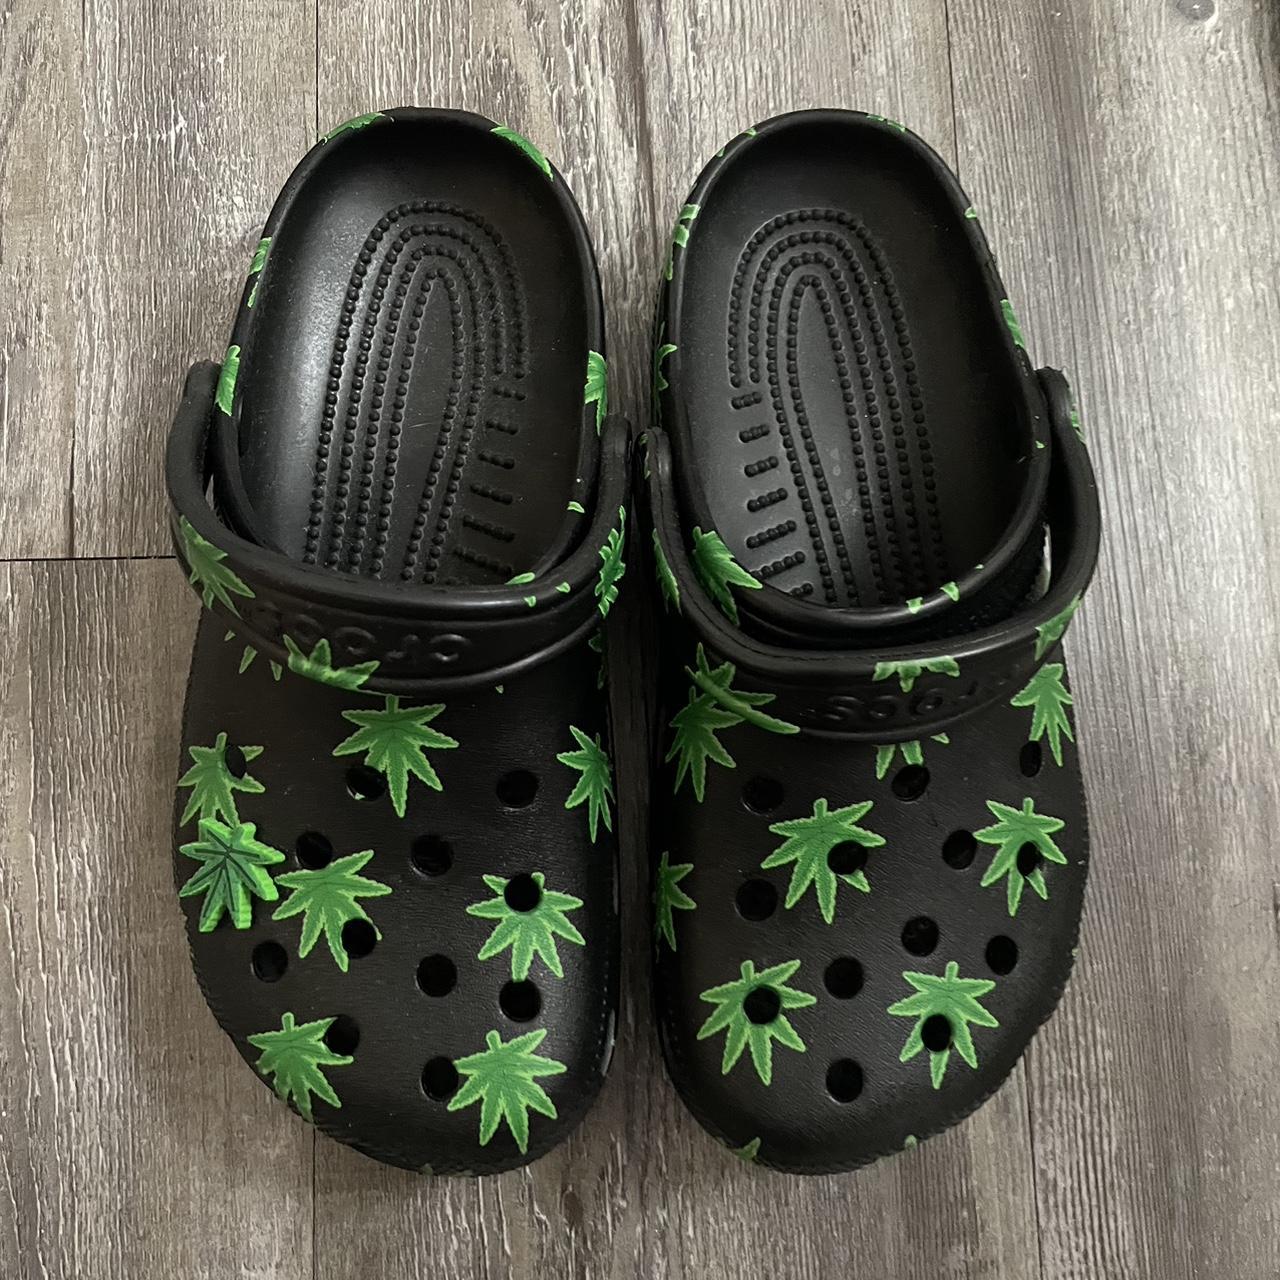 Crocs Men's Green and Black Clogs